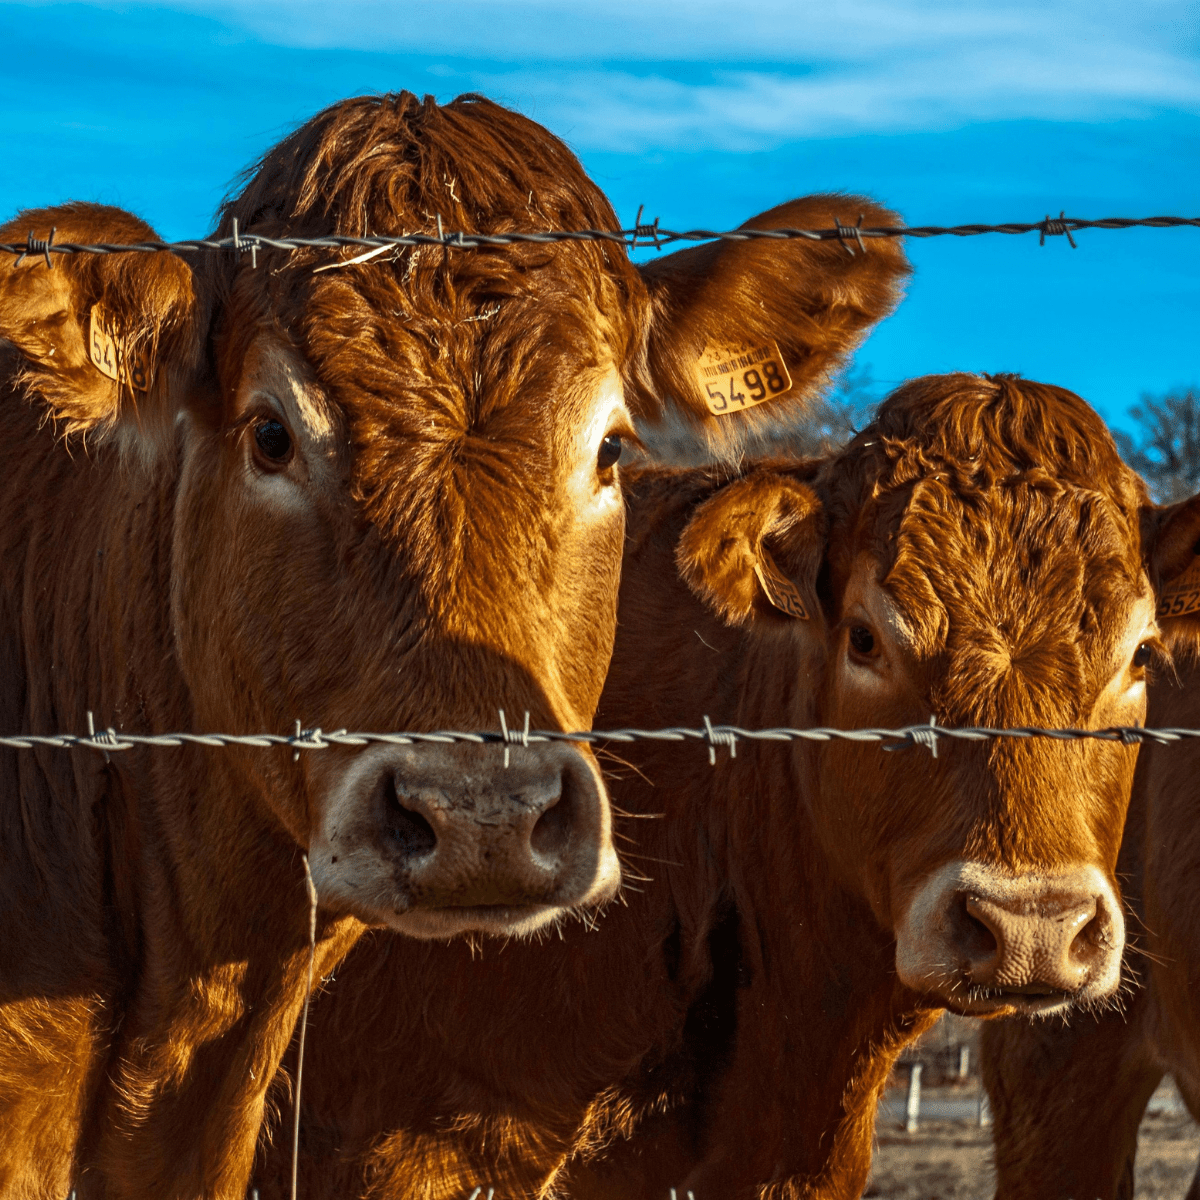 cattle breeding season